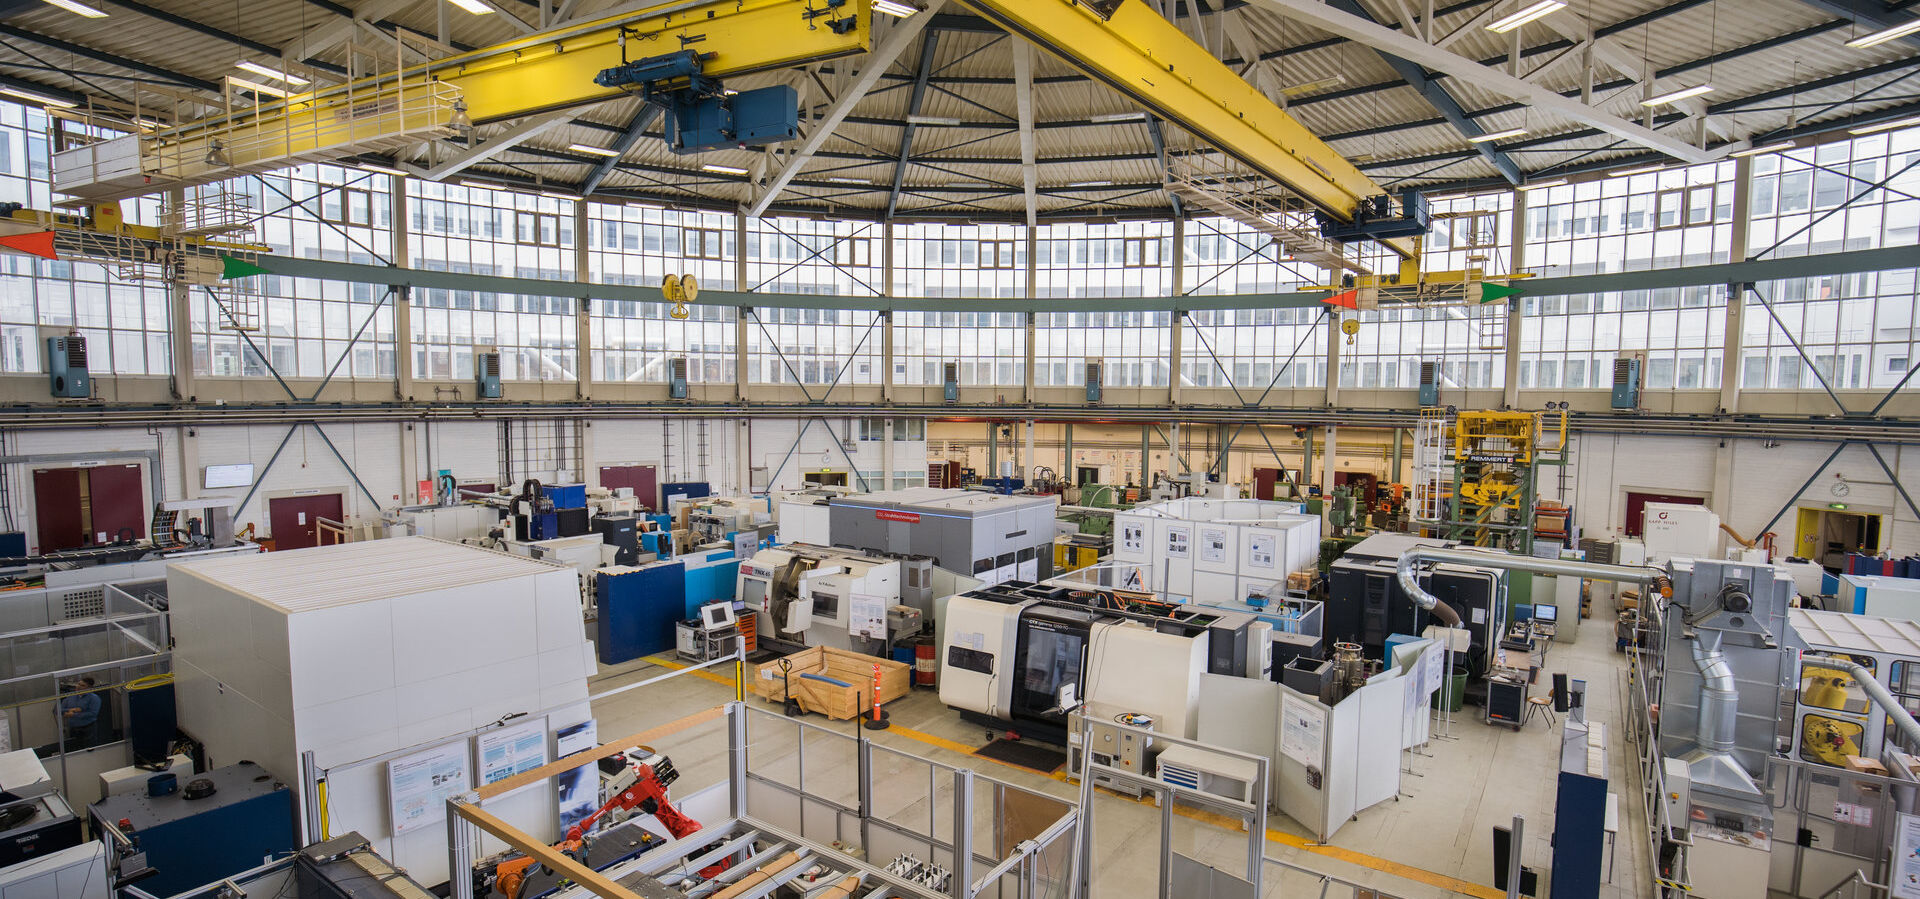 Blick auf das Produktionstechnische Zentrum der Technischen Universität Berlin